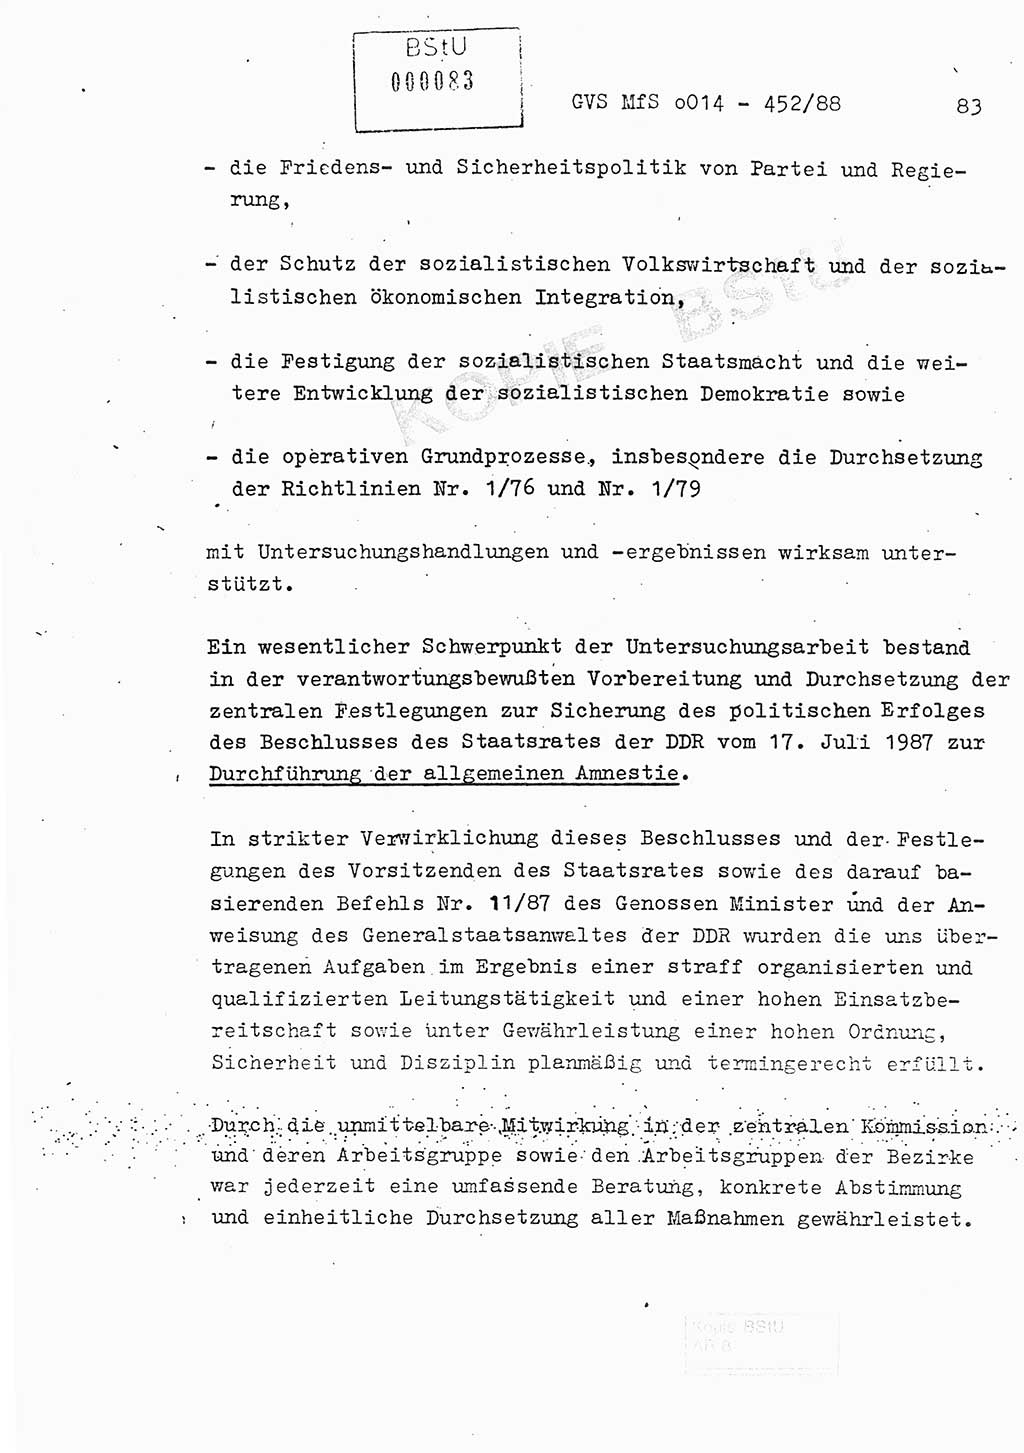 Jahresbericht der Hauptabteilung (HA) Ⅸ 1987, Einschätzung der Wirksamkeit der Untersuchungsarbeit im Jahre 1987, Ministerium für Staatssicherheit (MfS) der Deutschen Demokratischen Republik (DDR), Hauptabteilung Ⅸ, Geheime Verschlußsache (GVS) o014-452/88, Berlin 1988, Seite 83 (Einsch. MfS DDR HA Ⅸ GVS o014-452/88 1987, S. 83)